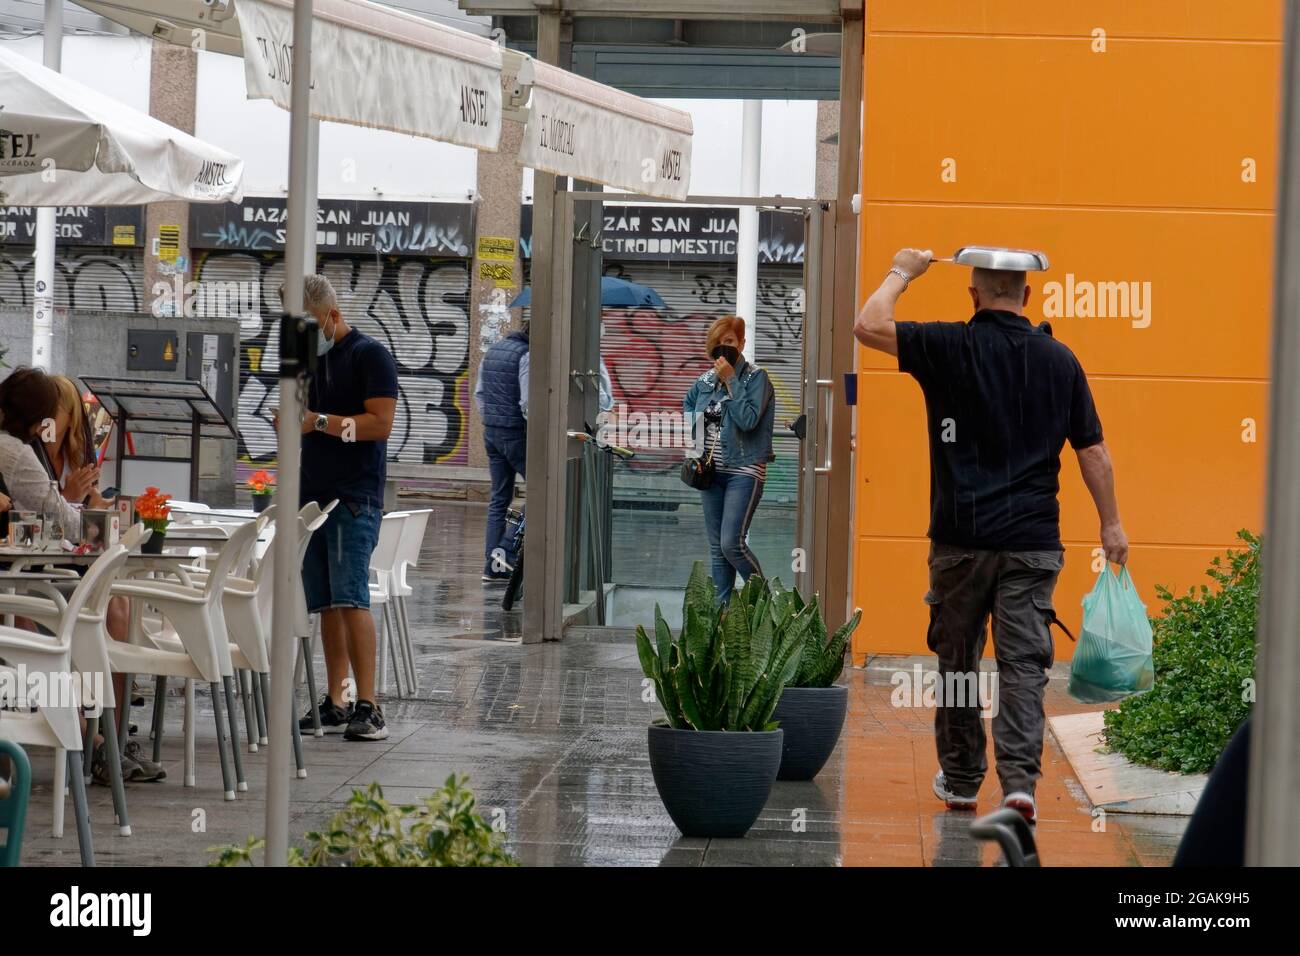 Regen in Malaga, Mann mit Bratpfanne als Regenschutz, Altstadt Malaga, Costa del Sol, Provinz Malaga, Andalusien, Spanien, Europa, Stock Photo